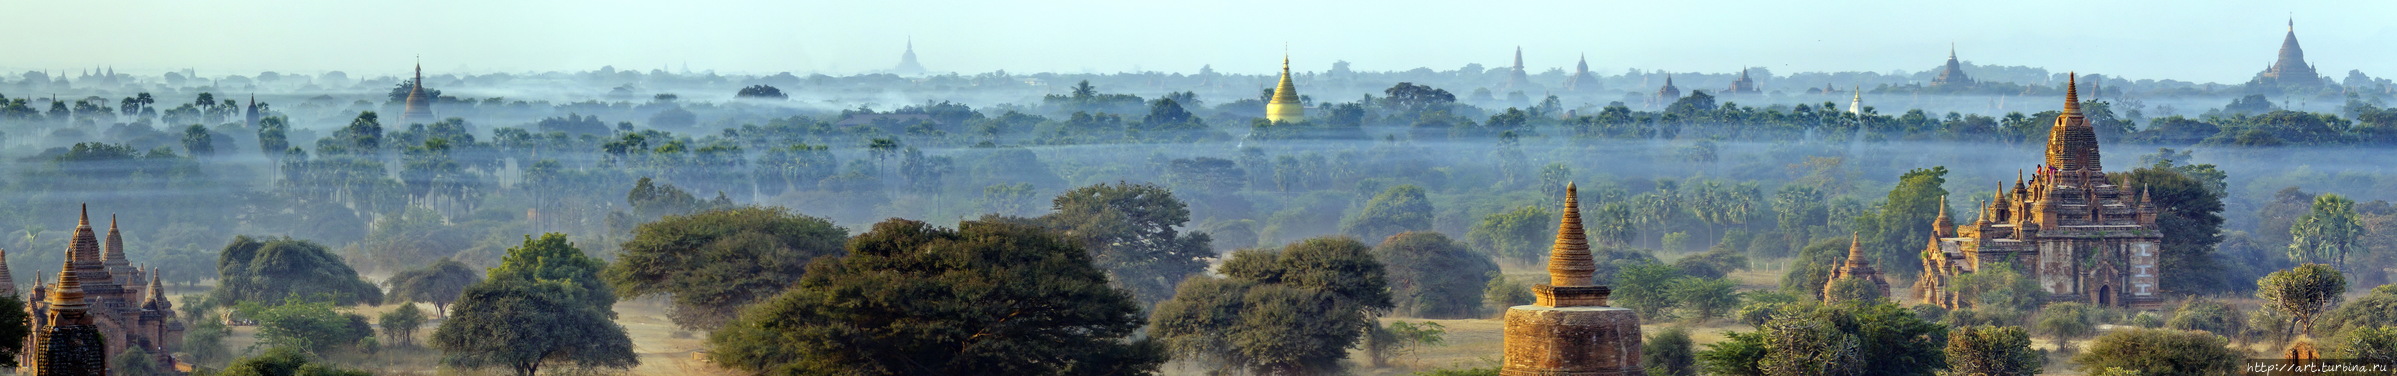 или медленно расползающихся волн утреннего тумана. Баган, Мьянма